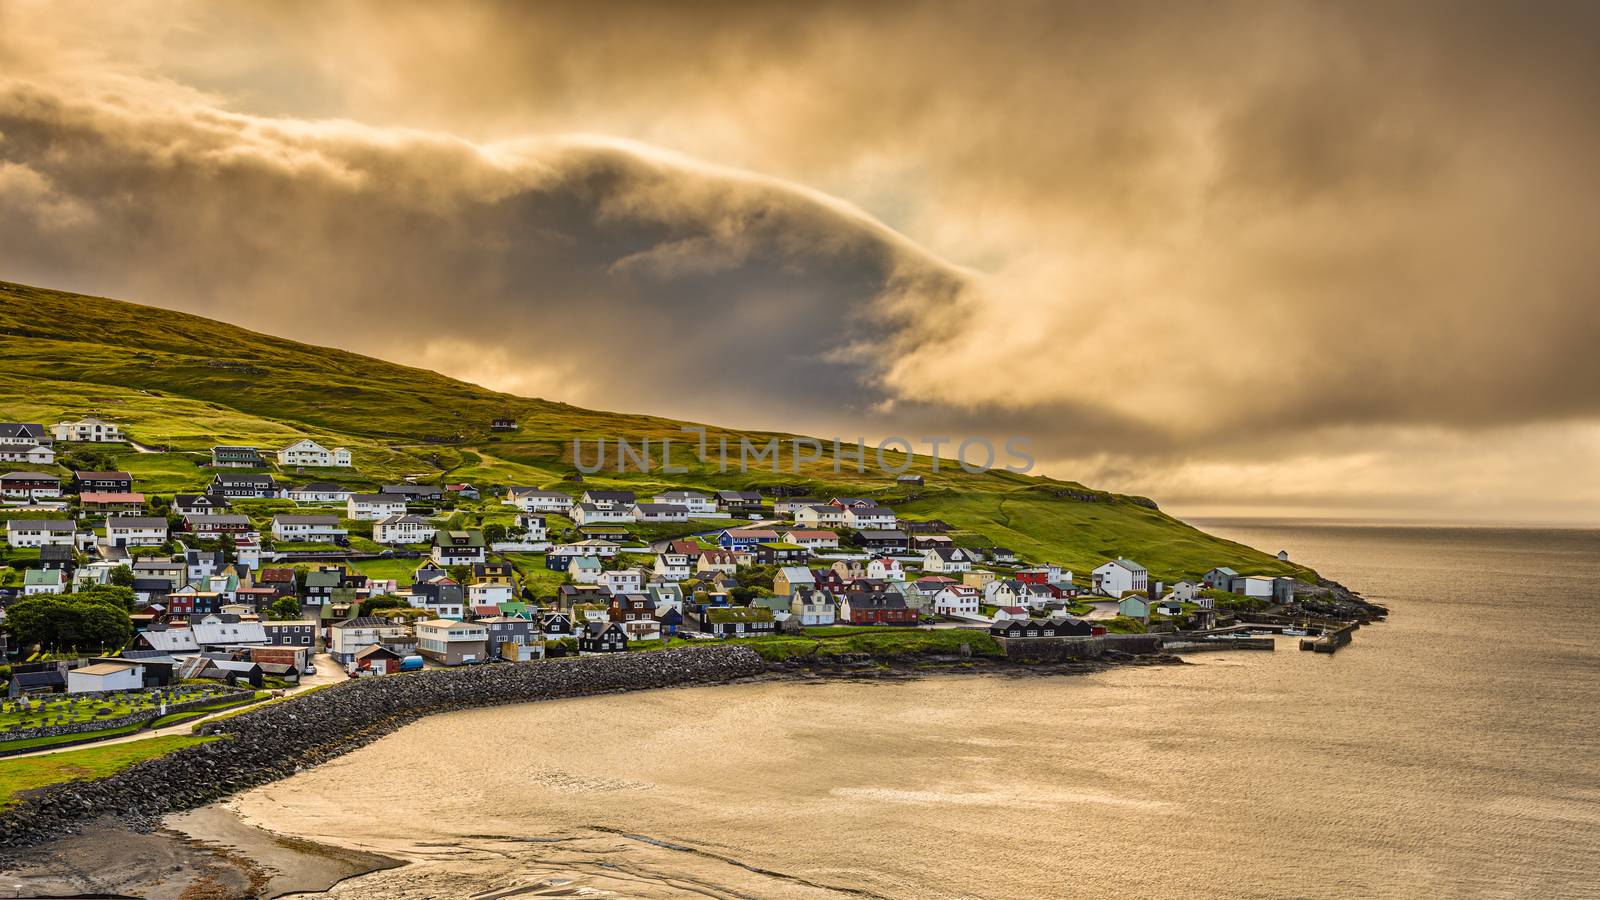 Sunrise above Sandavagur, Faroe Islands, Denmark by nickfox